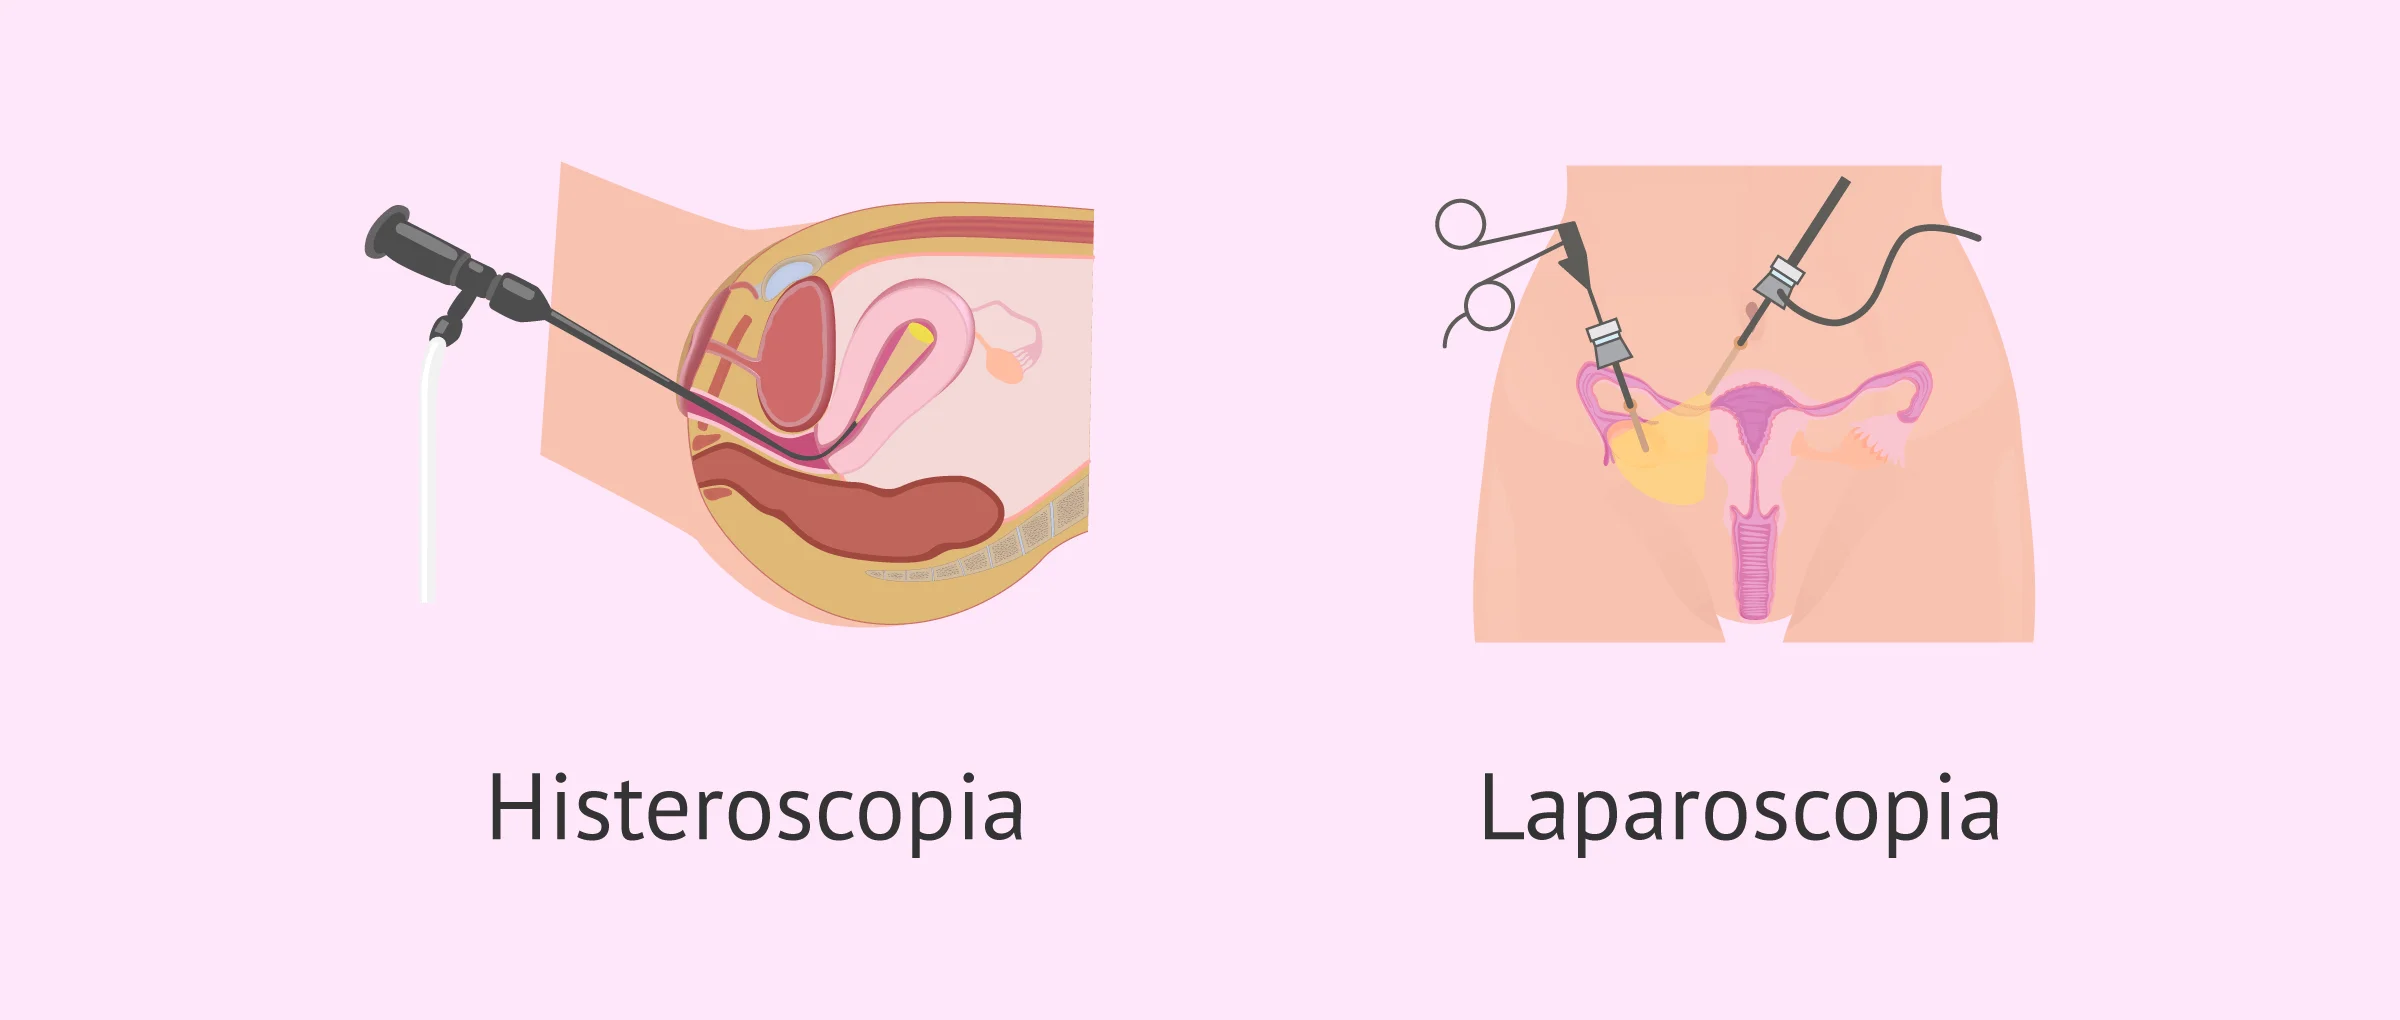 Comparación de la histeroscopia y la laparoscopia